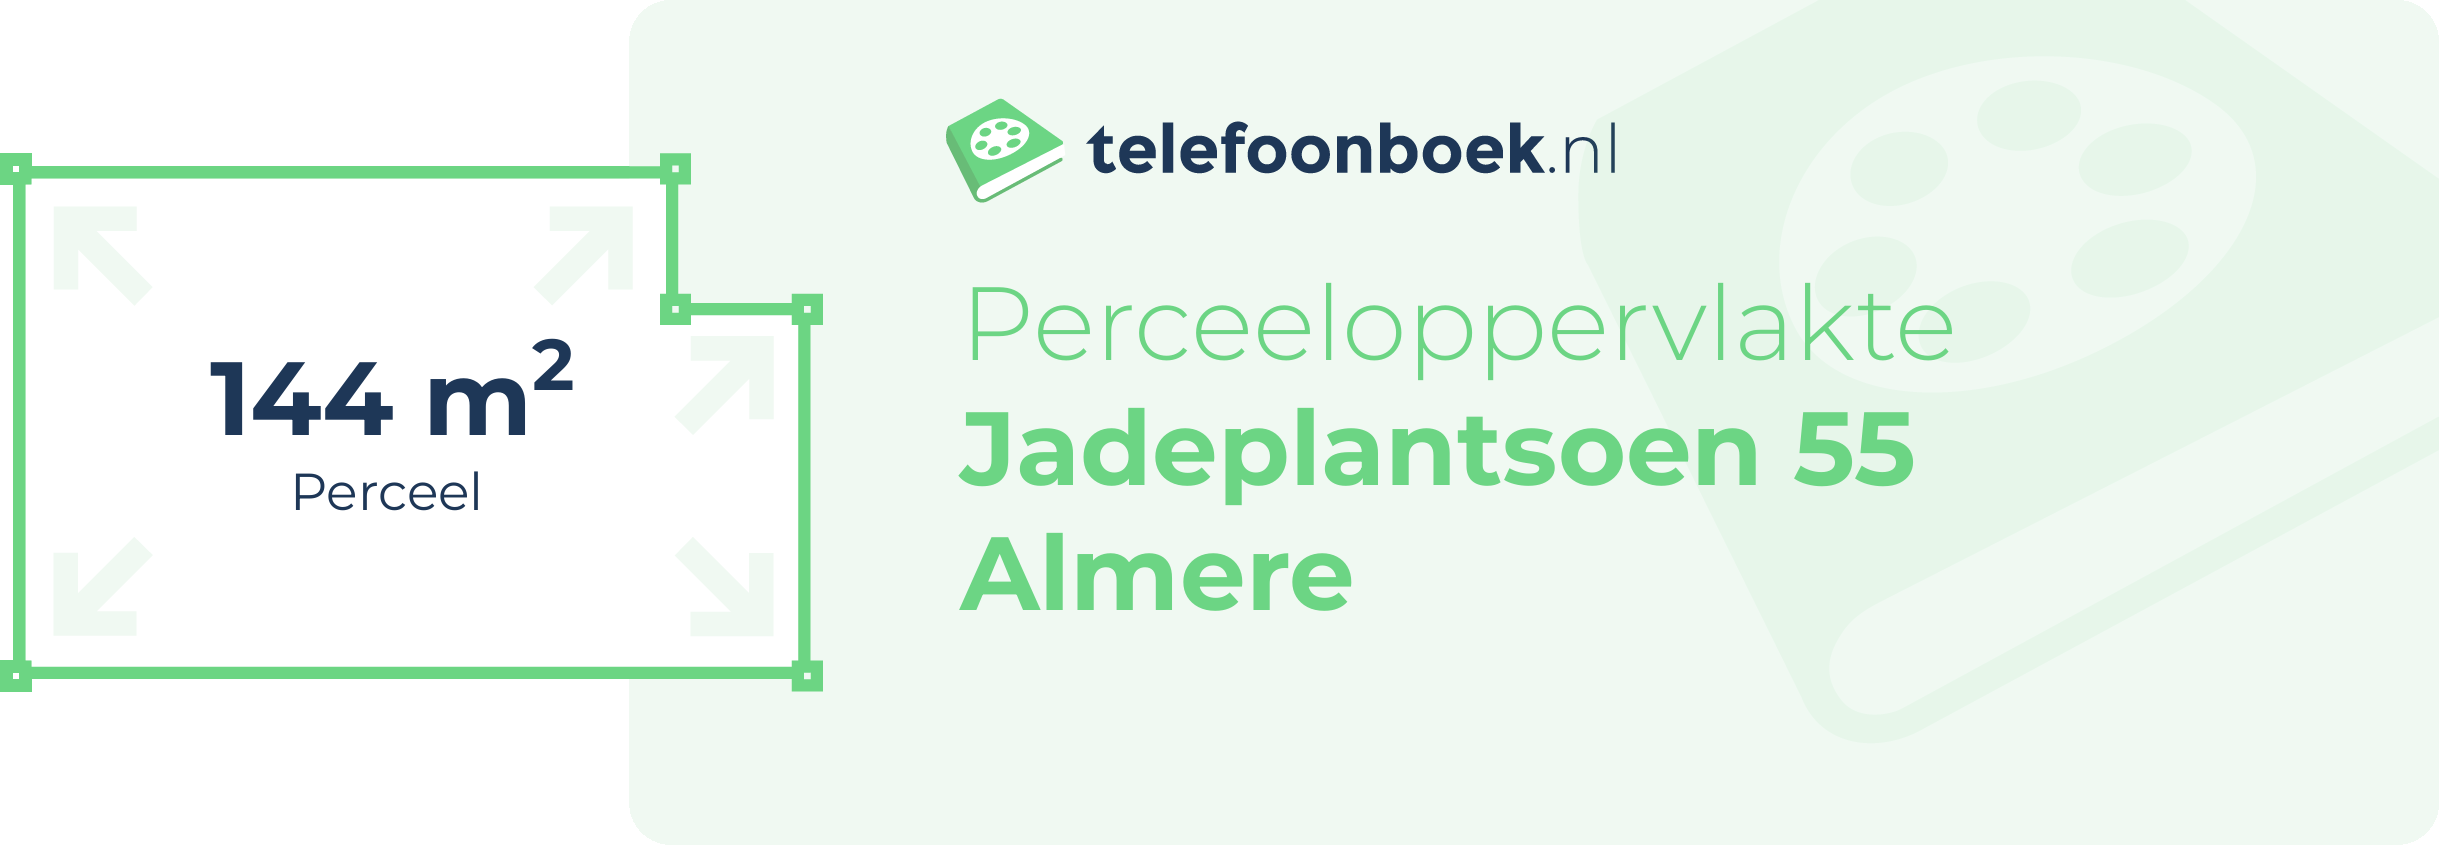 Perceeloppervlakte Jadeplantsoen 55 Almere